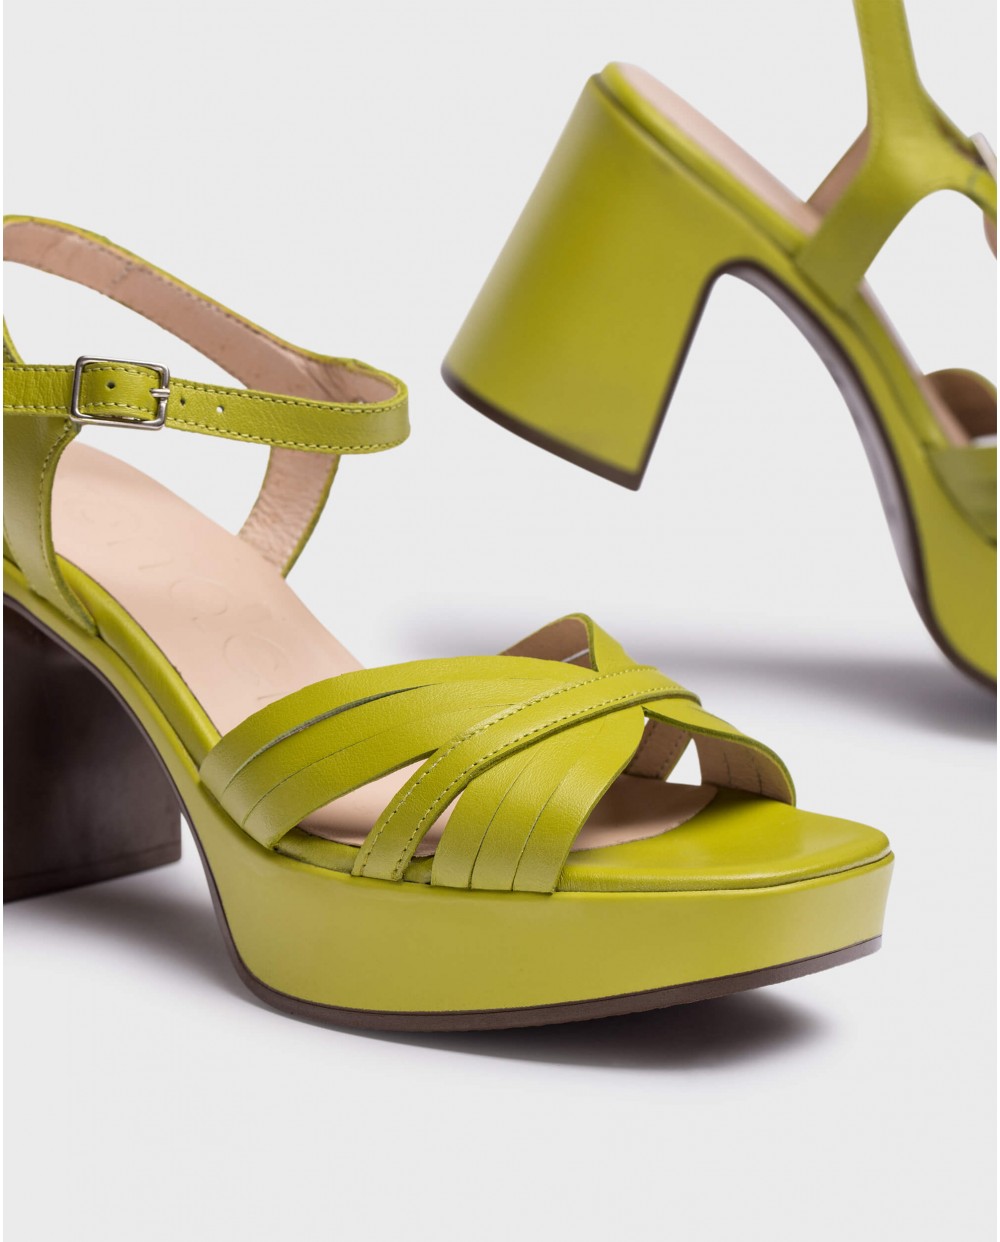 Green Marisol sandals